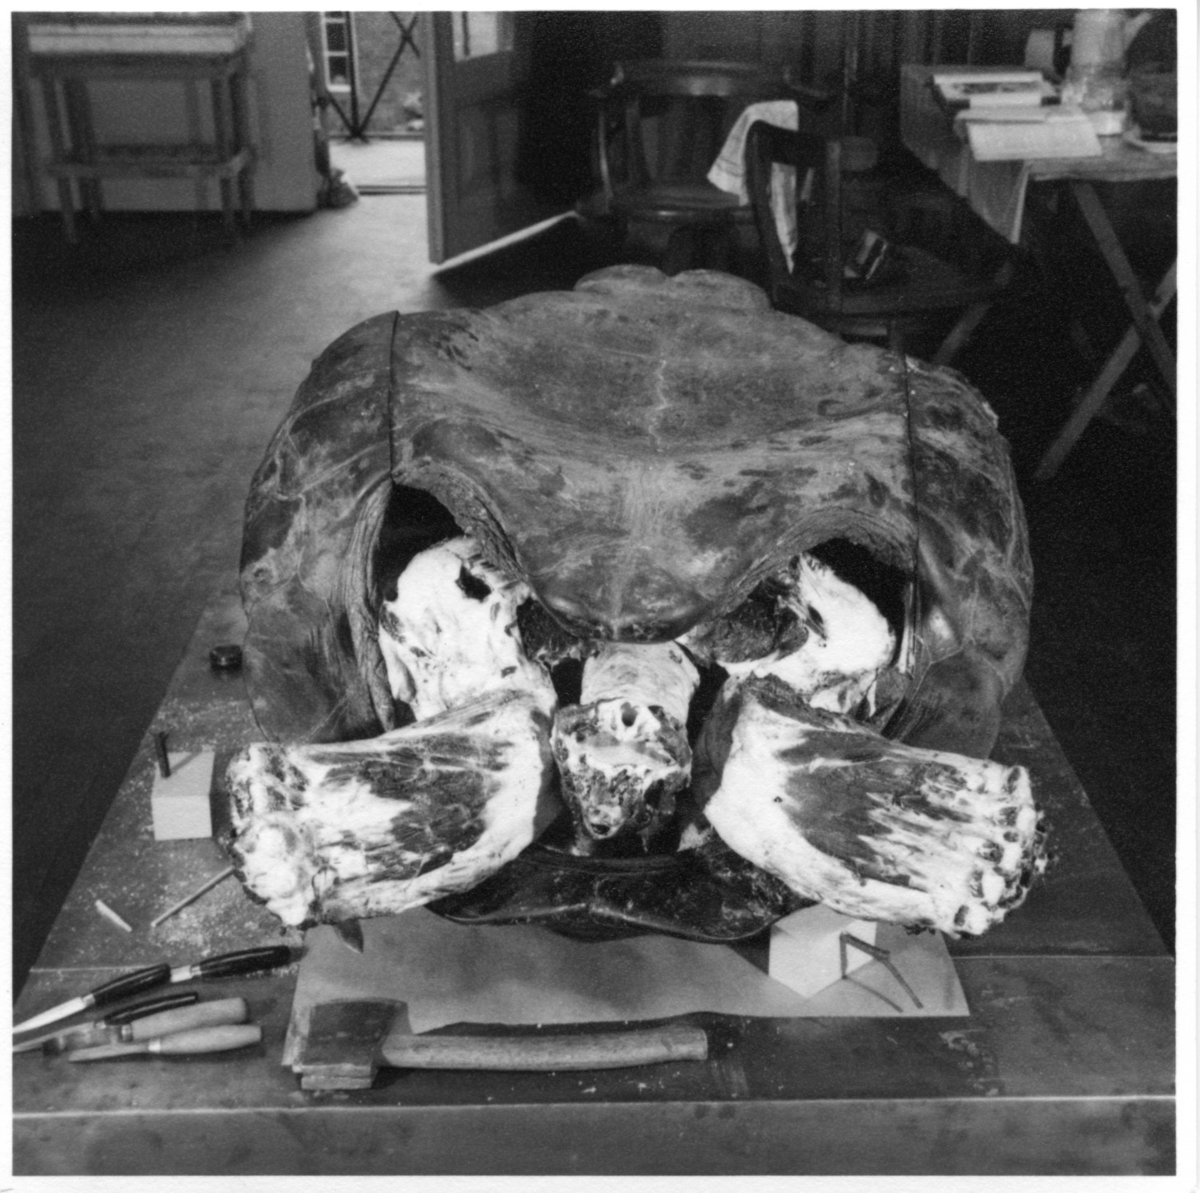 'Galapagossköldpadda, hane. Under arbetet med  sköldpaddan i ateljen. Monterad av konservator Gunnar Enemyr. Fotograferad framifrån. Ben, huvud och skal. I bakgrunden arbetsbord och stol. Intill sköldpaddan ligger ett antal knivar. ::  :: Fynddatum: 1948-06-03. Död: 1948-12-09. ::  :: Ingår i serie med fotonr. 4467:1-4.'